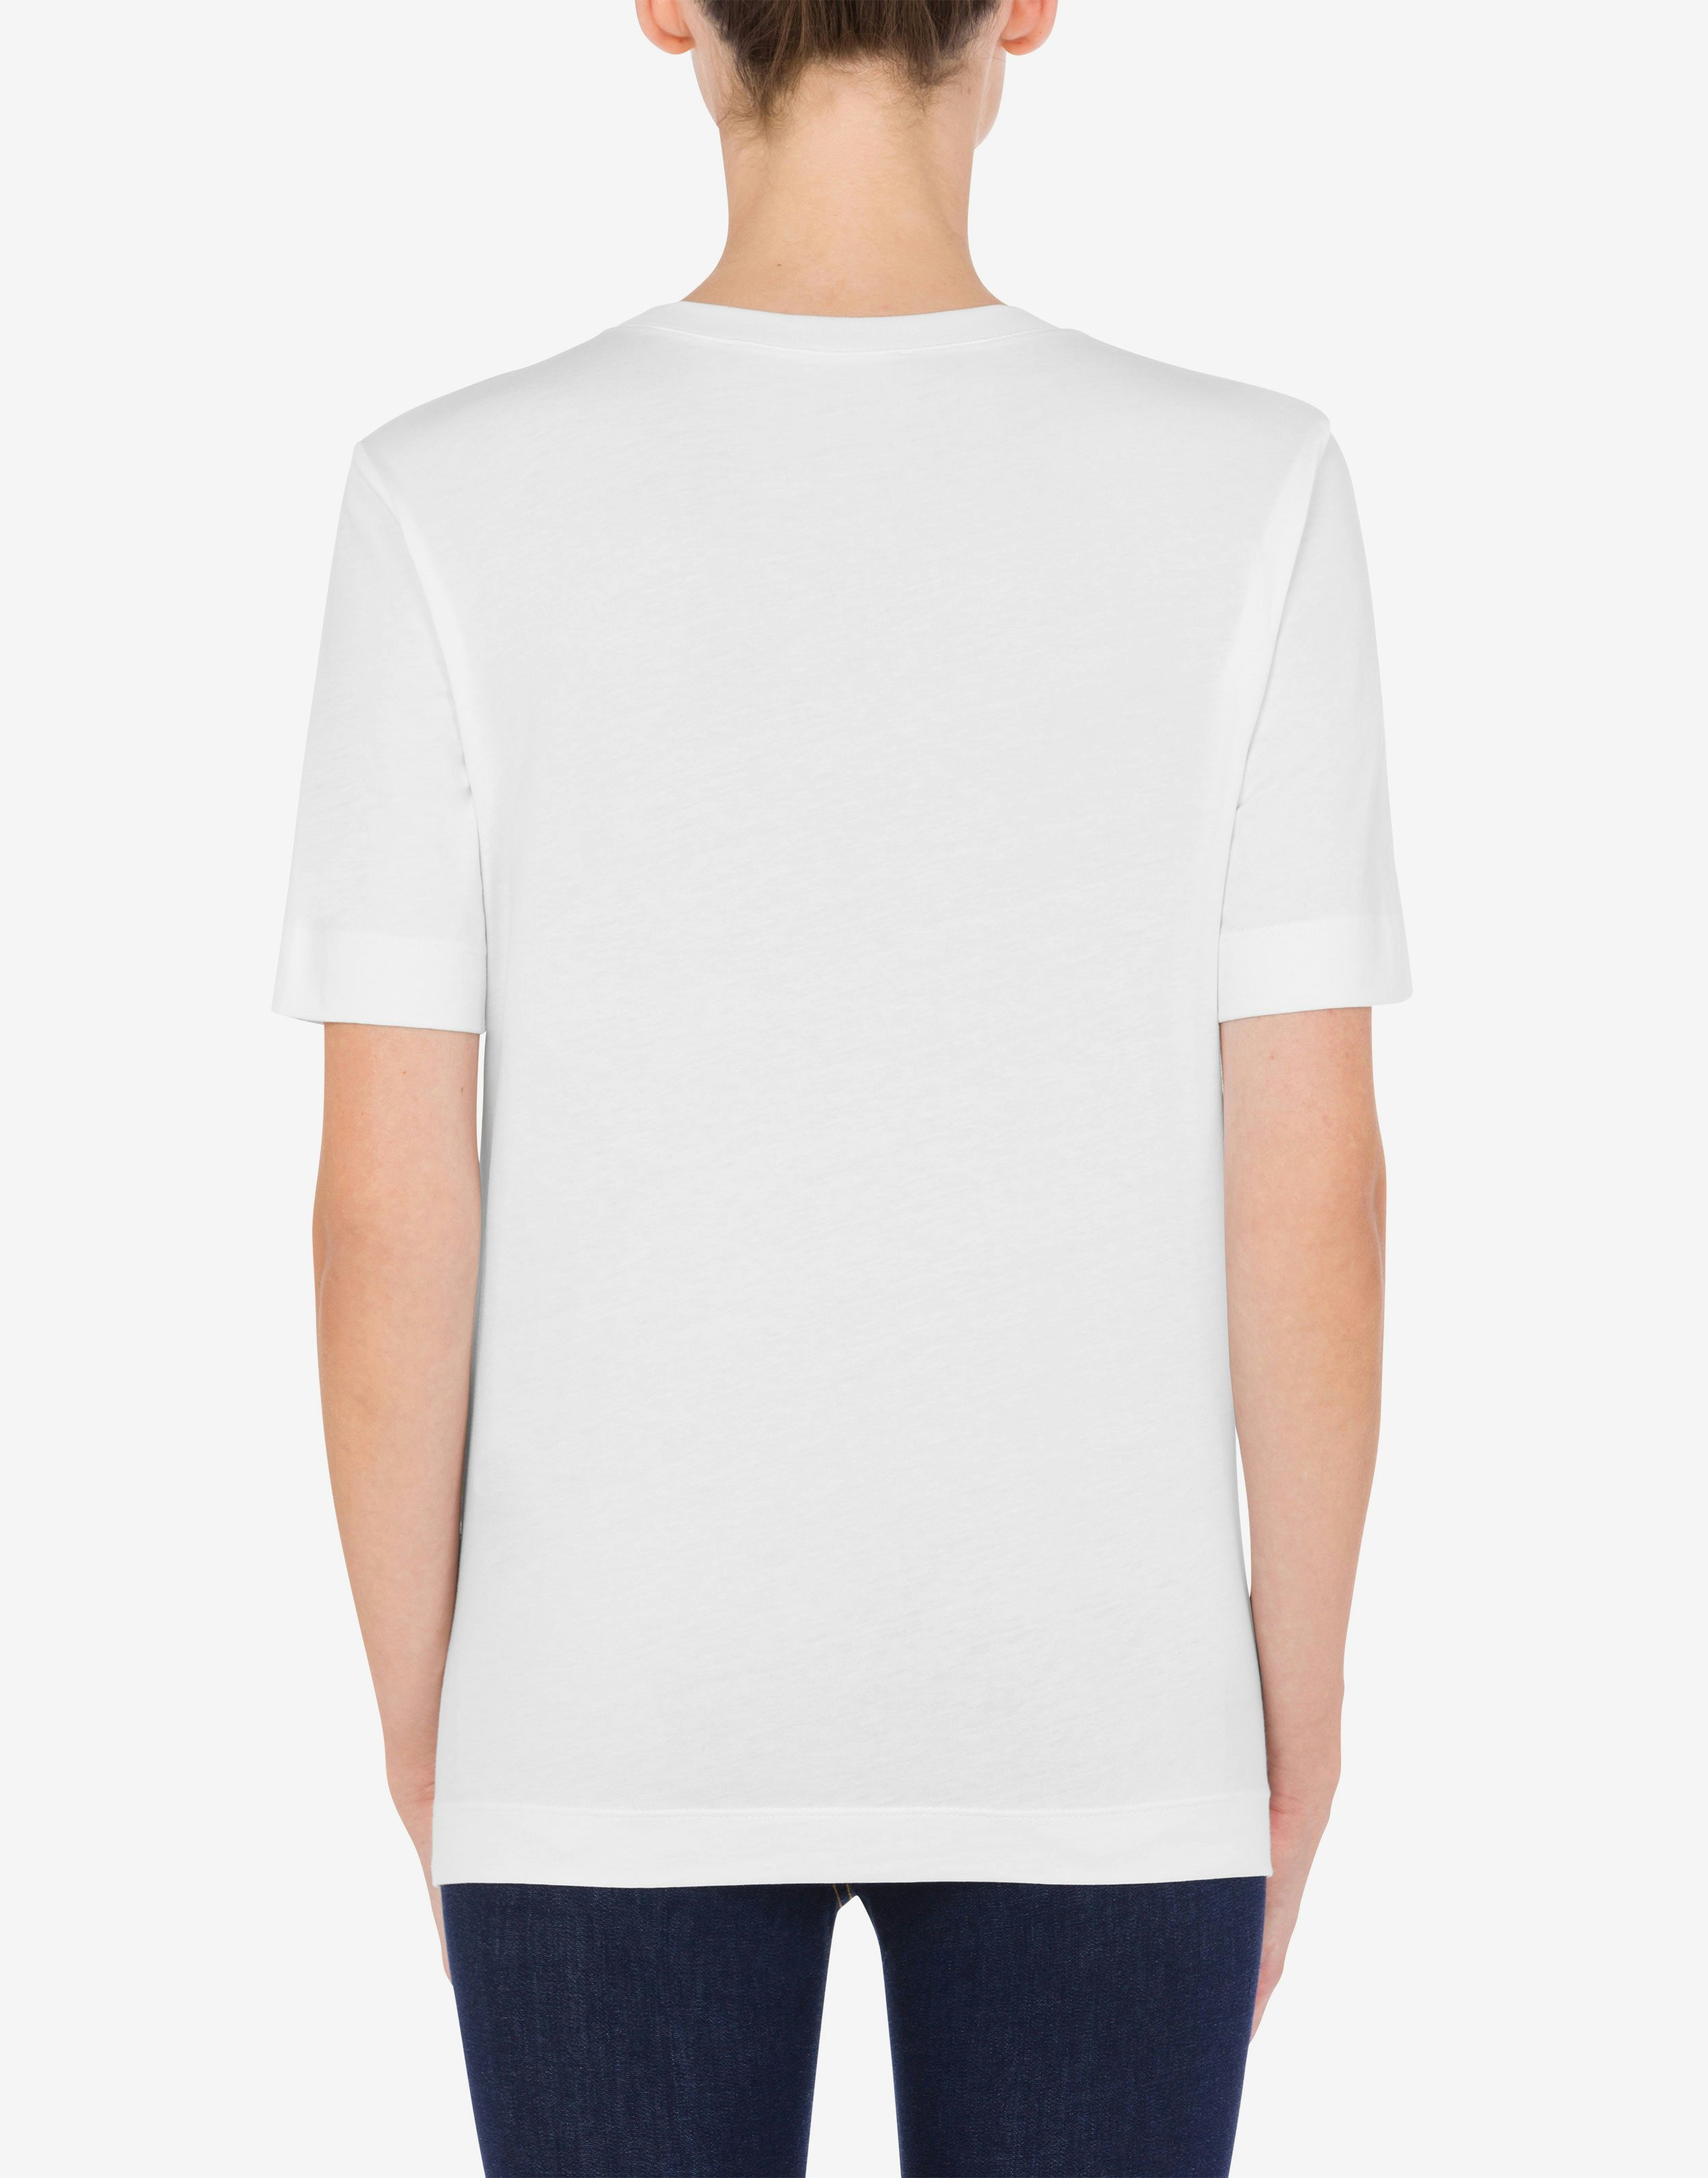 Cotton jersey Pop Art Zippers T-shirt 1